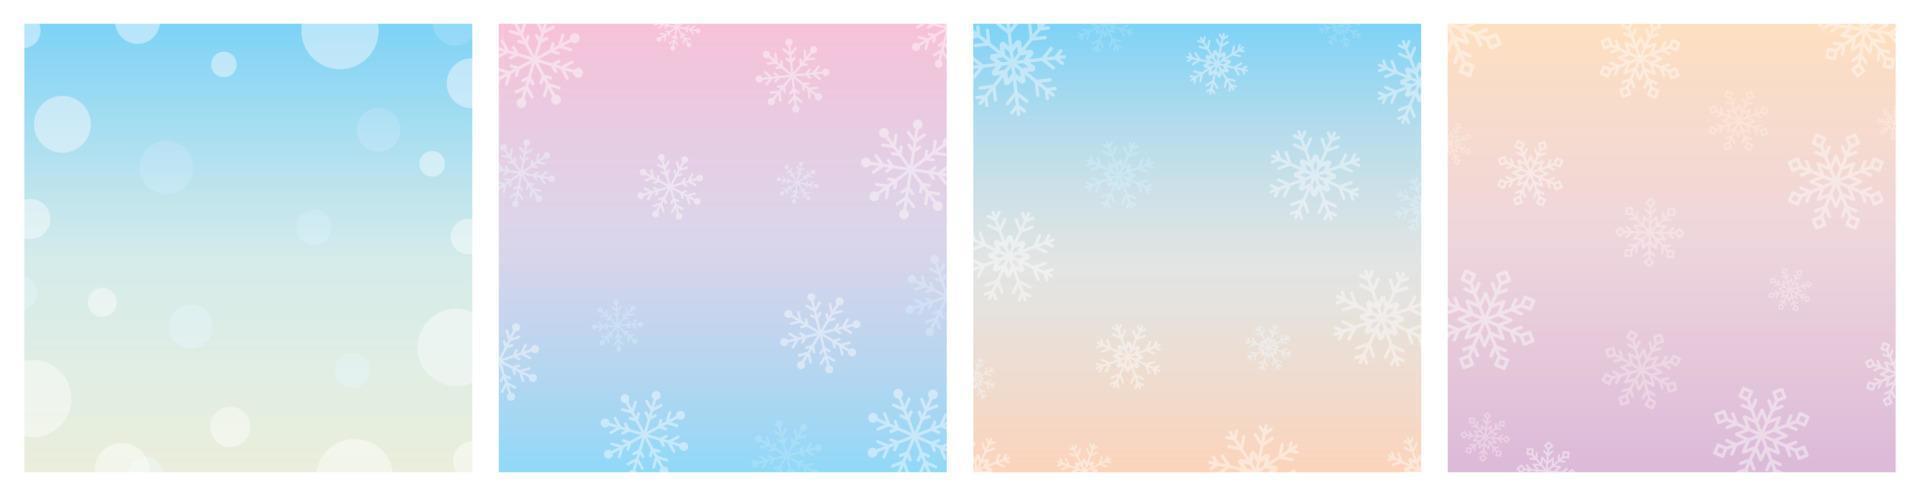 tom de cor de inverno gradiente pastel doce com vetor de ilustração de fundo quadrado de flocos de neve